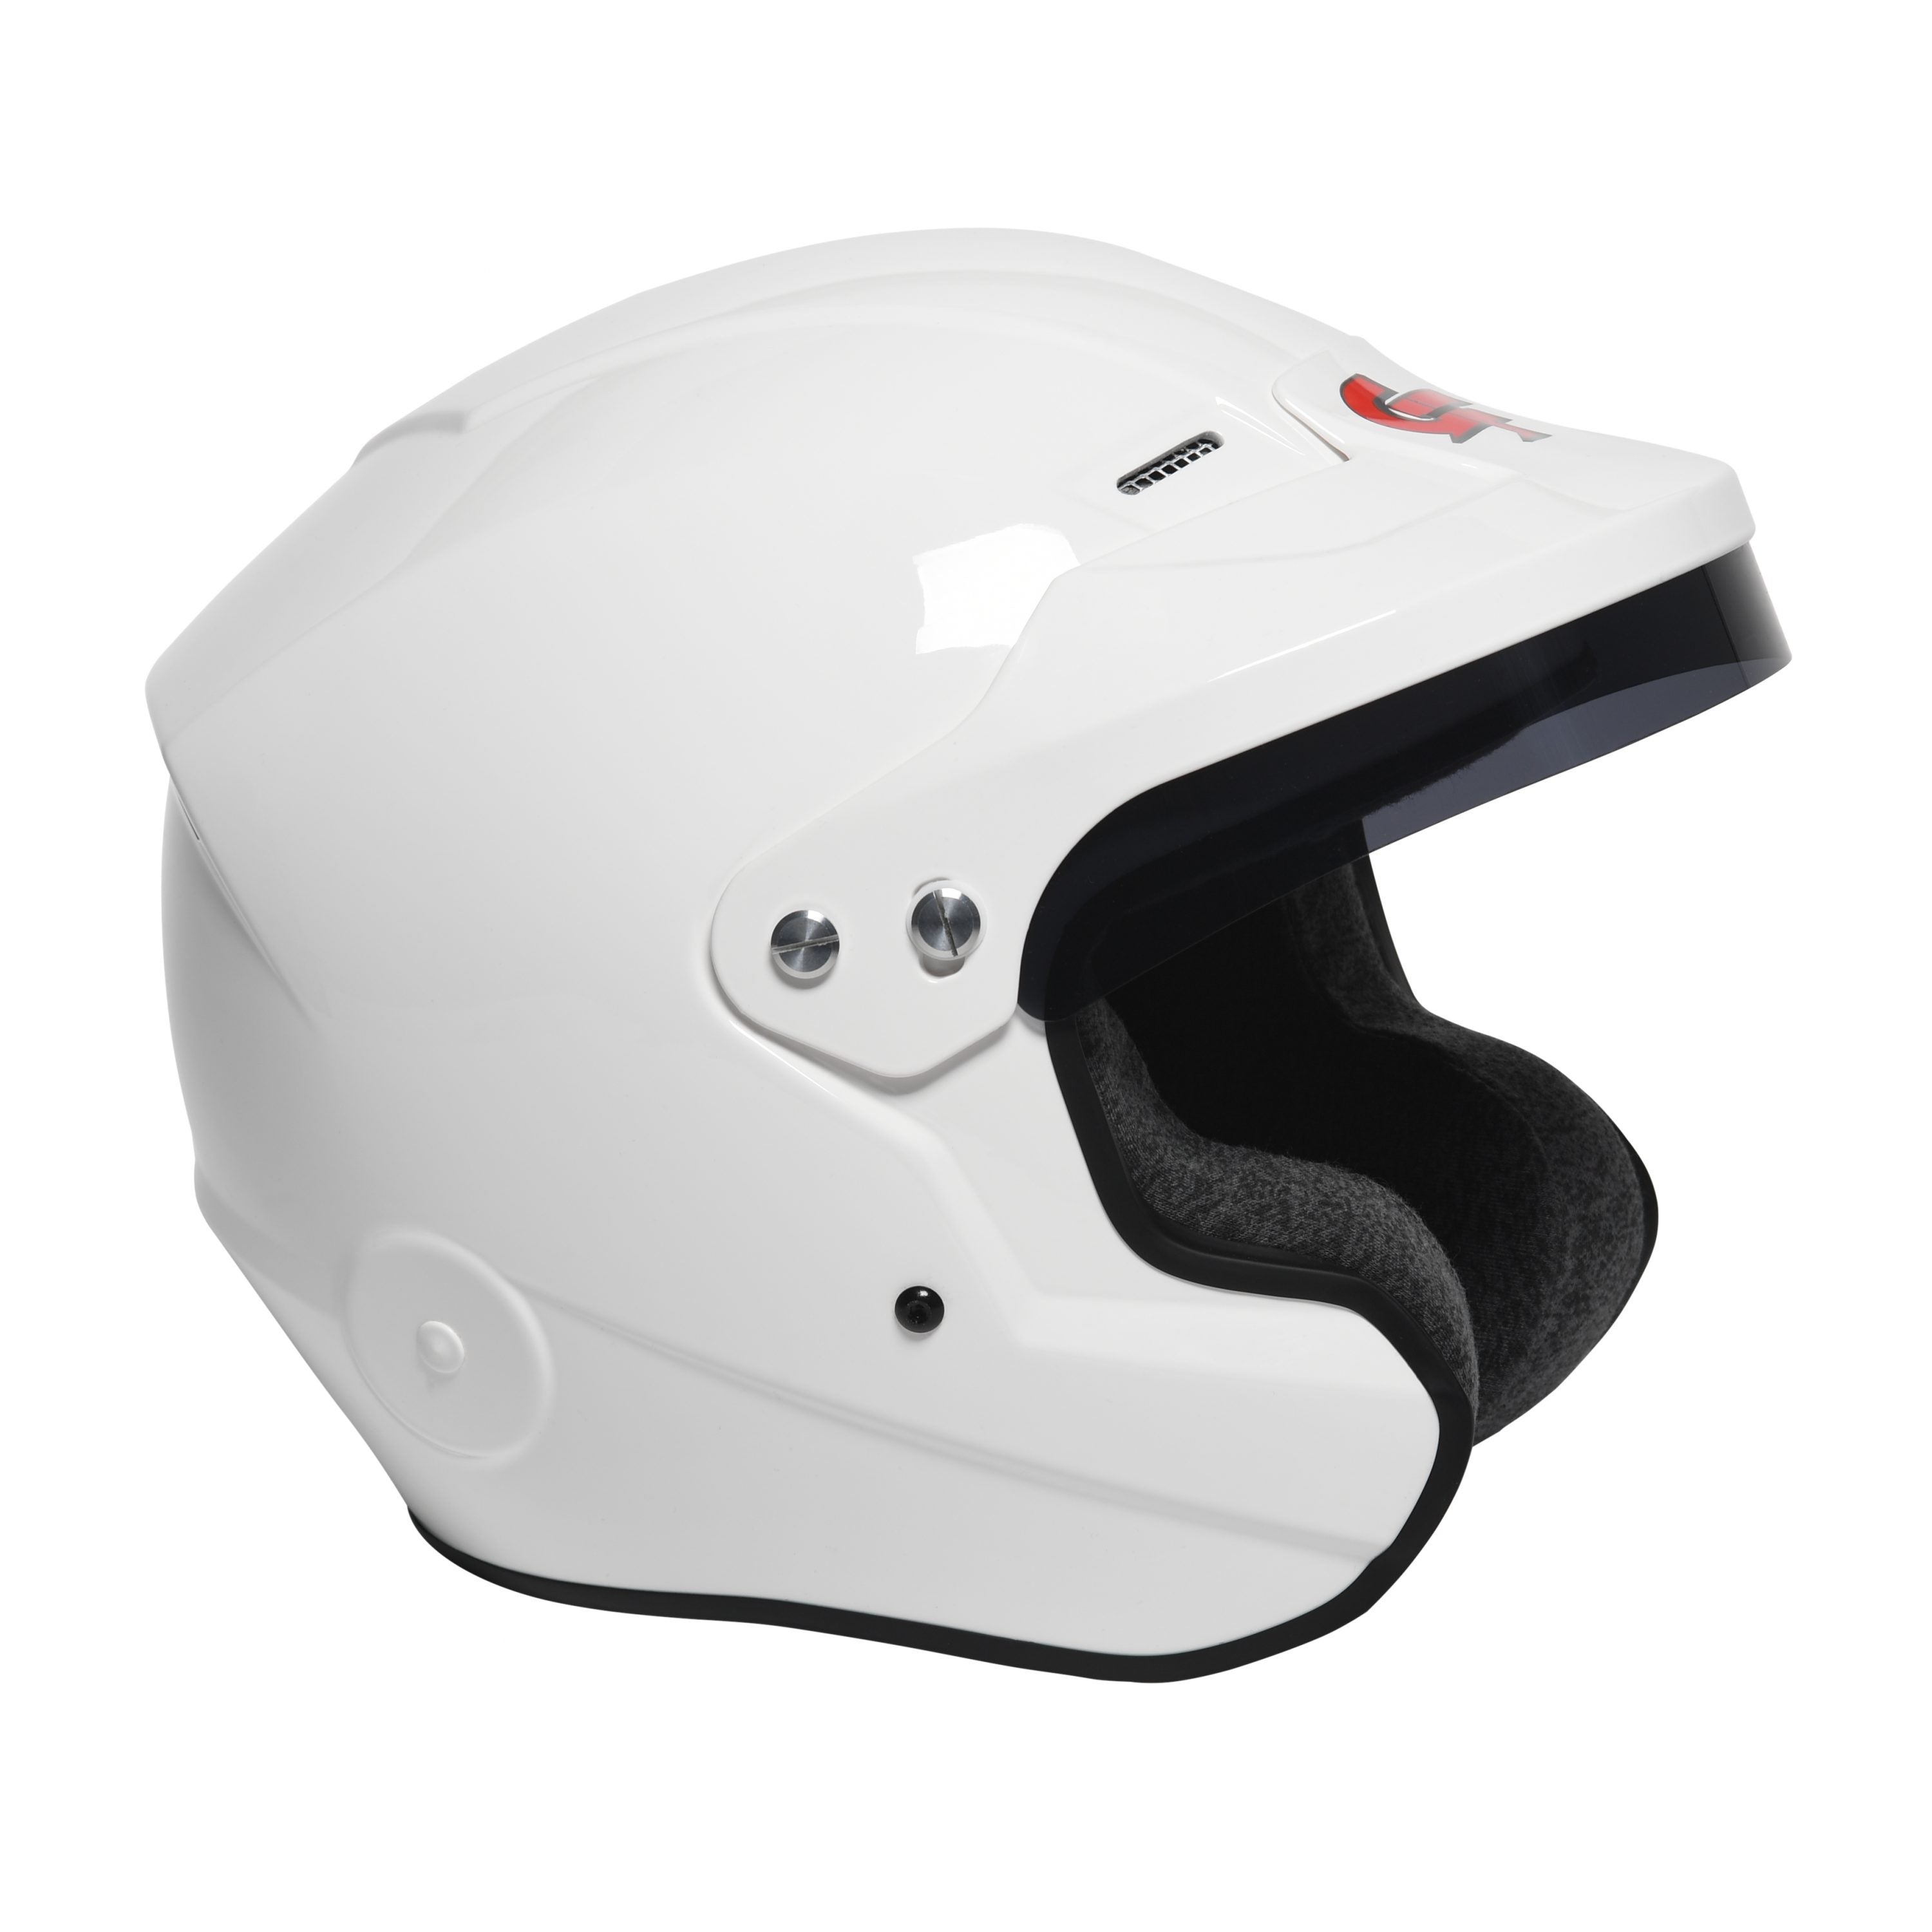 Nova OF SA2020 Helmet